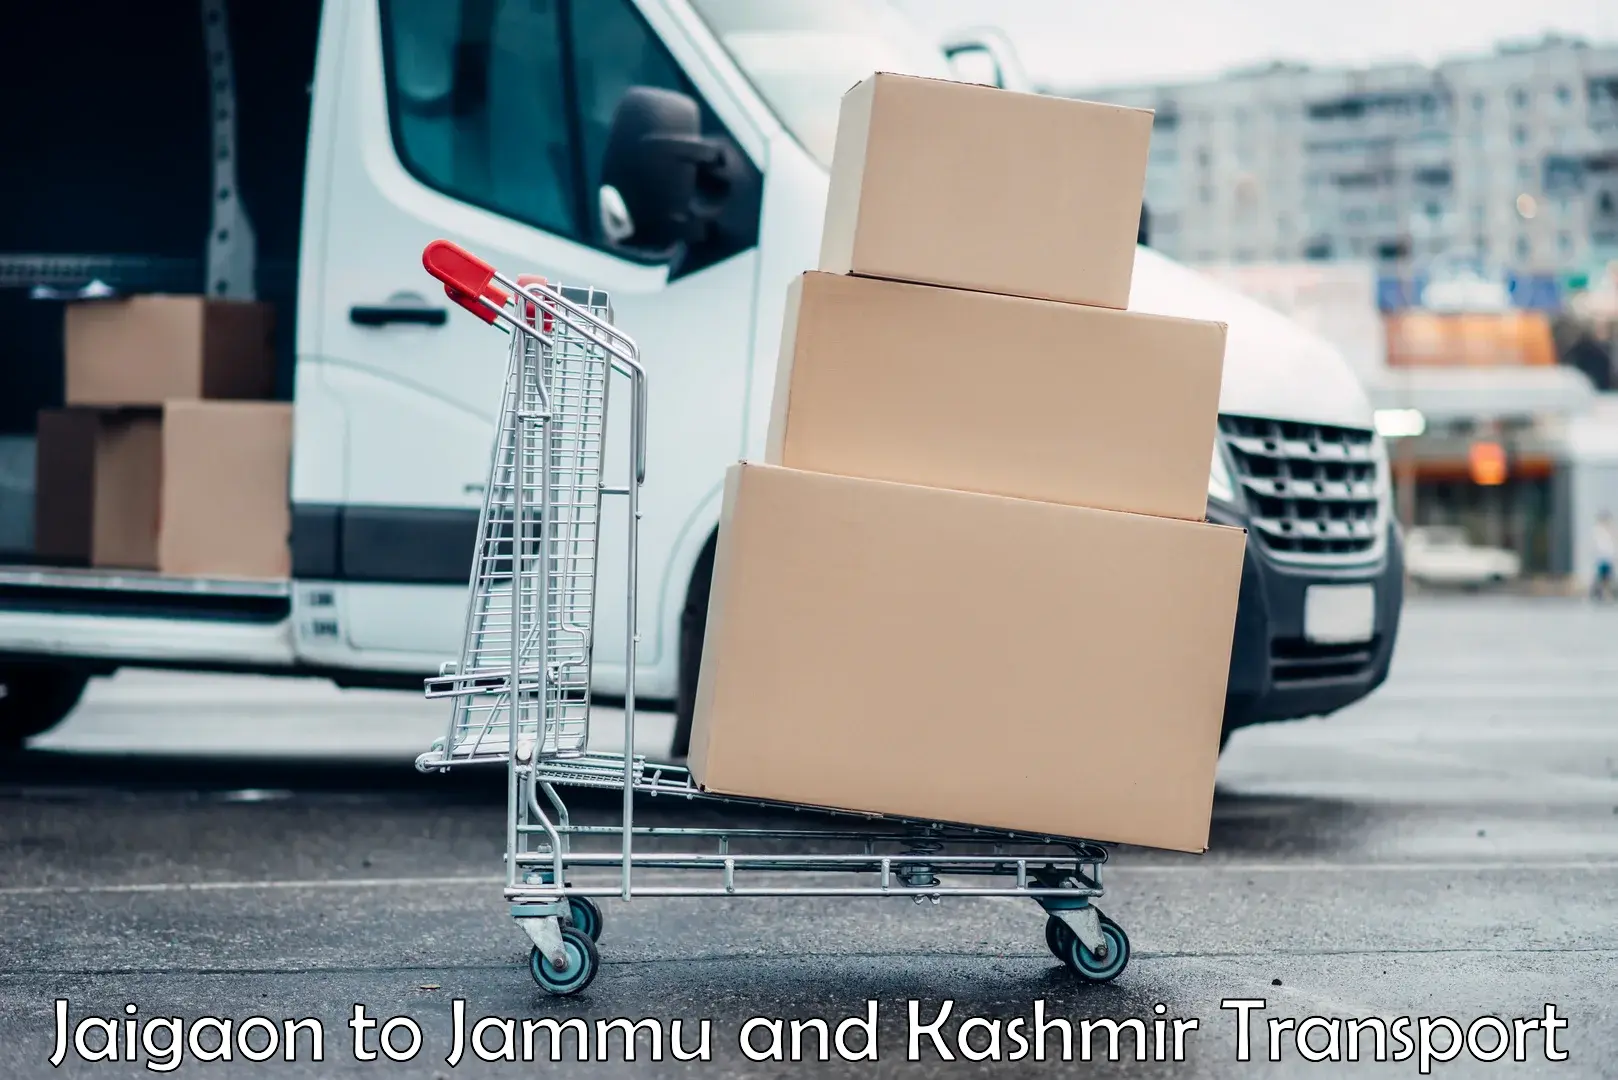 Vehicle transport services Jaigaon to Jammu and Kashmir